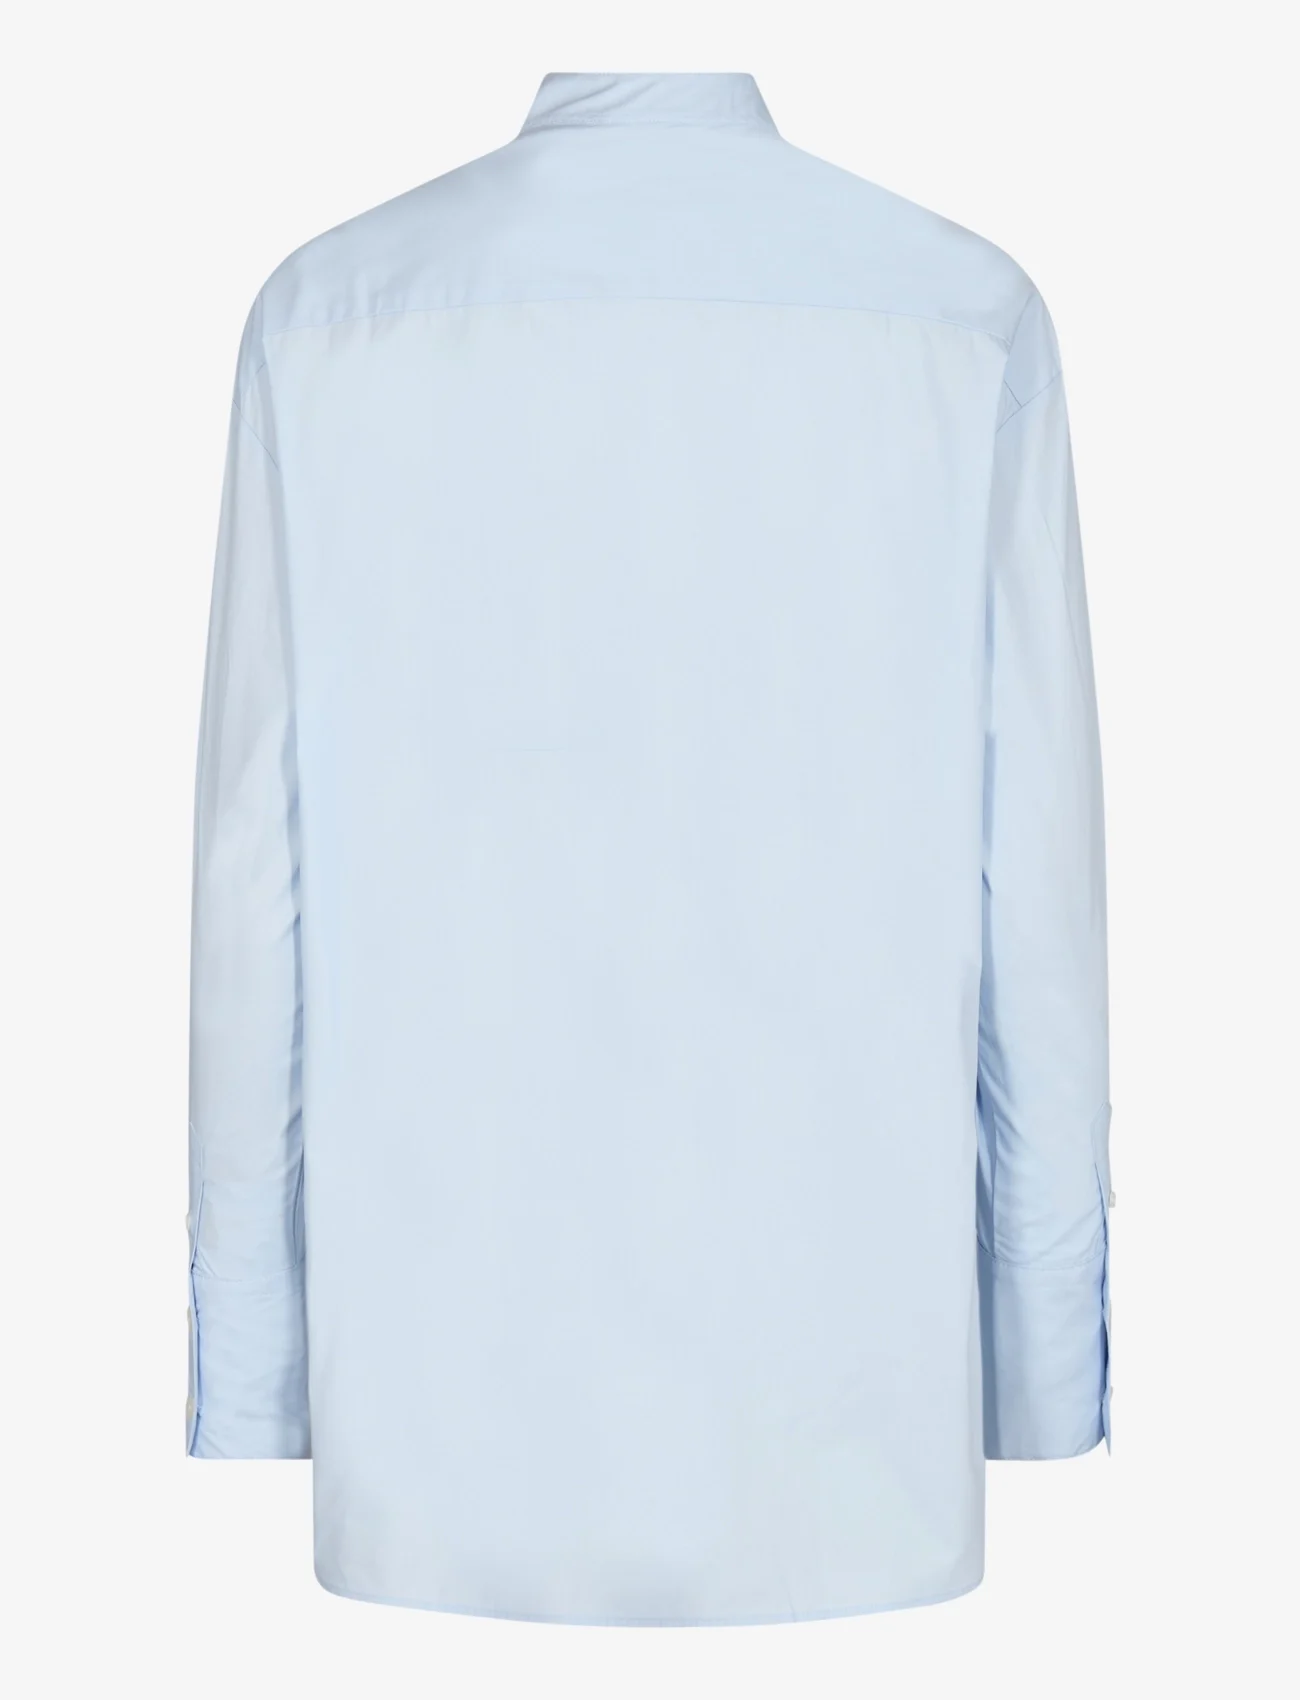 Bruun & Stengade - BS Bernadette Regular Fit Shirt - long-sleeved shirts - light blue - 1